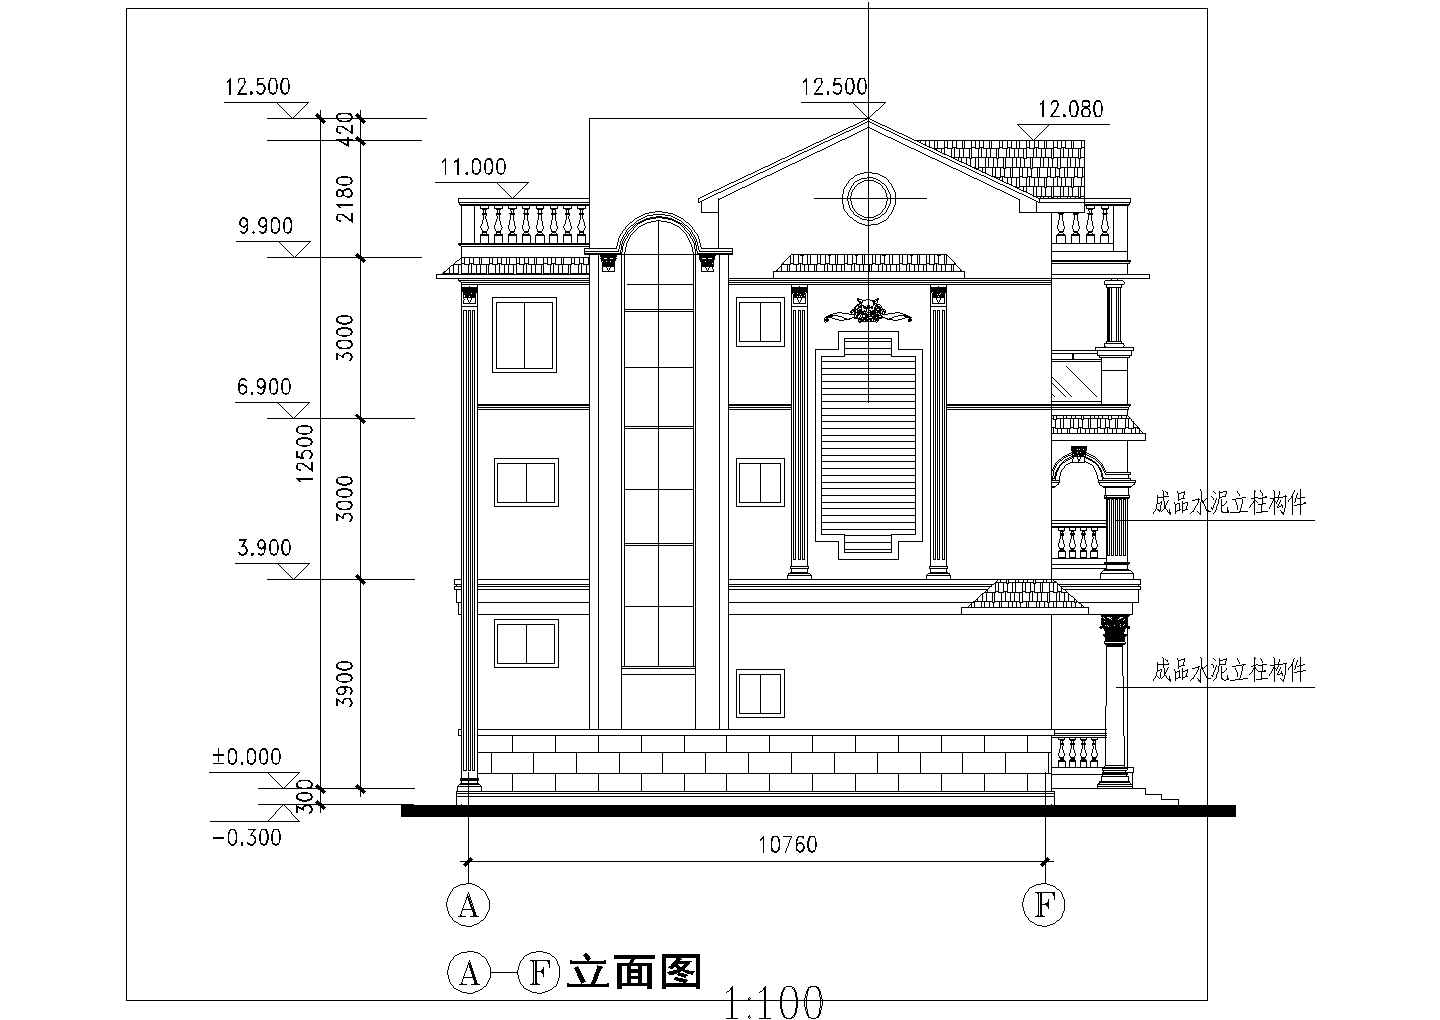 紧凑小型四层农村房屋详细建筑设计图